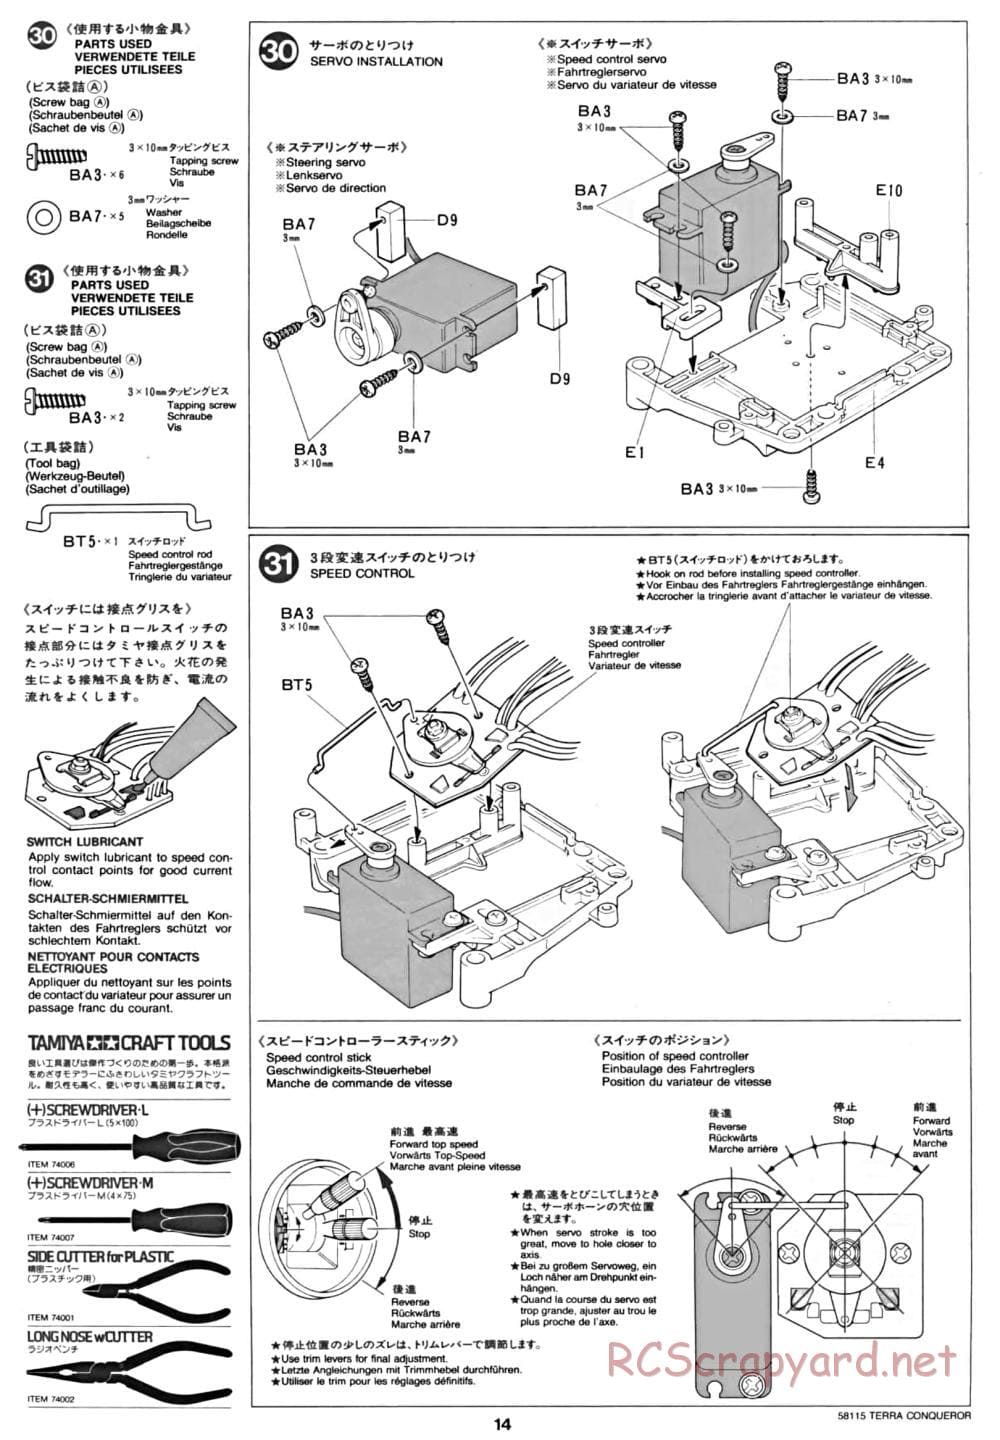 Tamiya - Terra Conqueror Chassis - Manual - Page 14